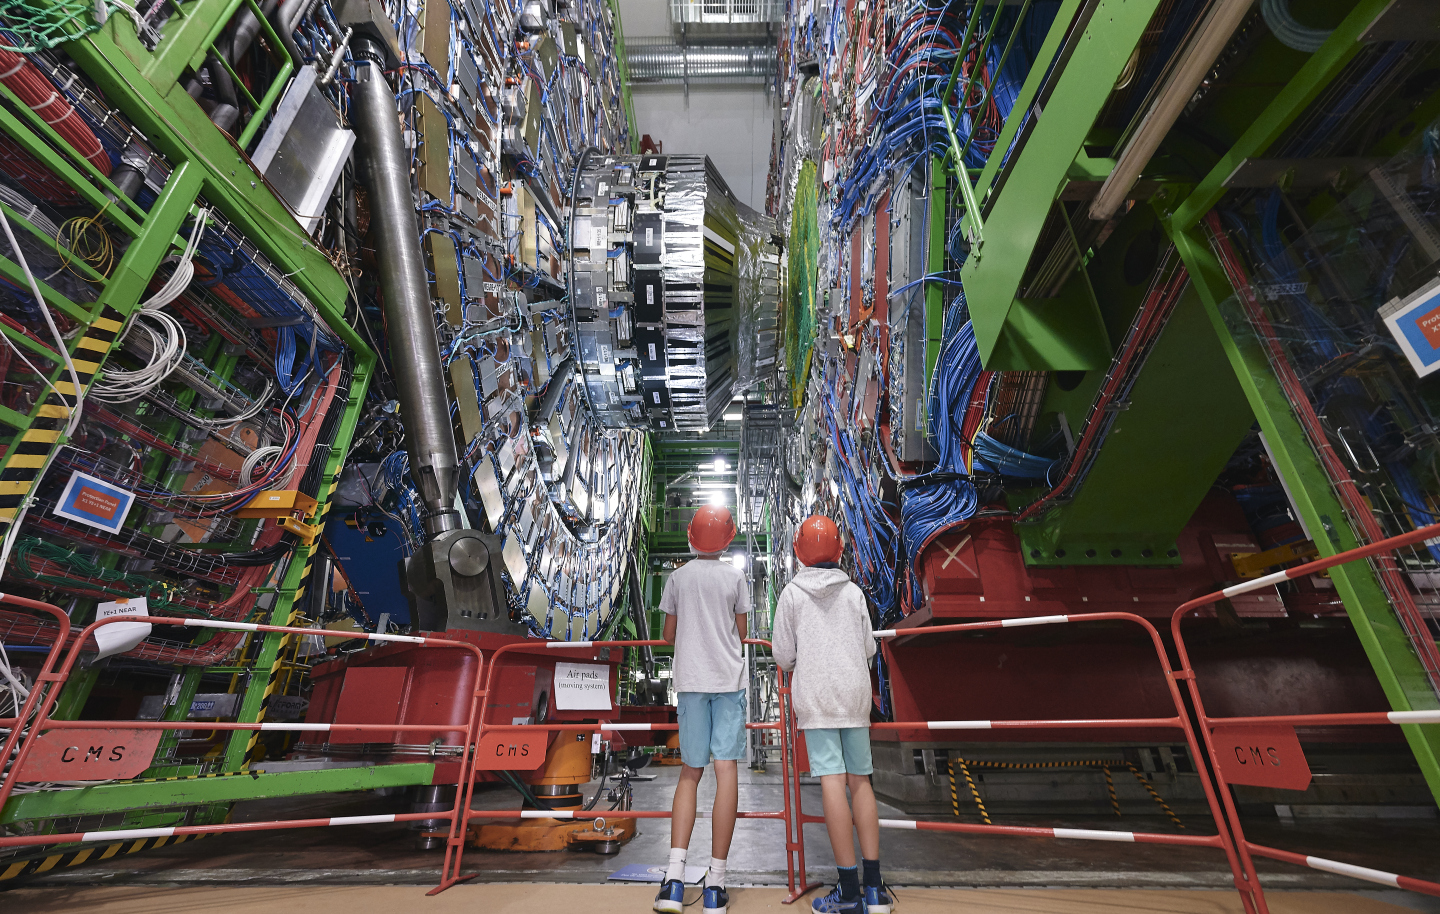 CMS during CERN Open Days 2019